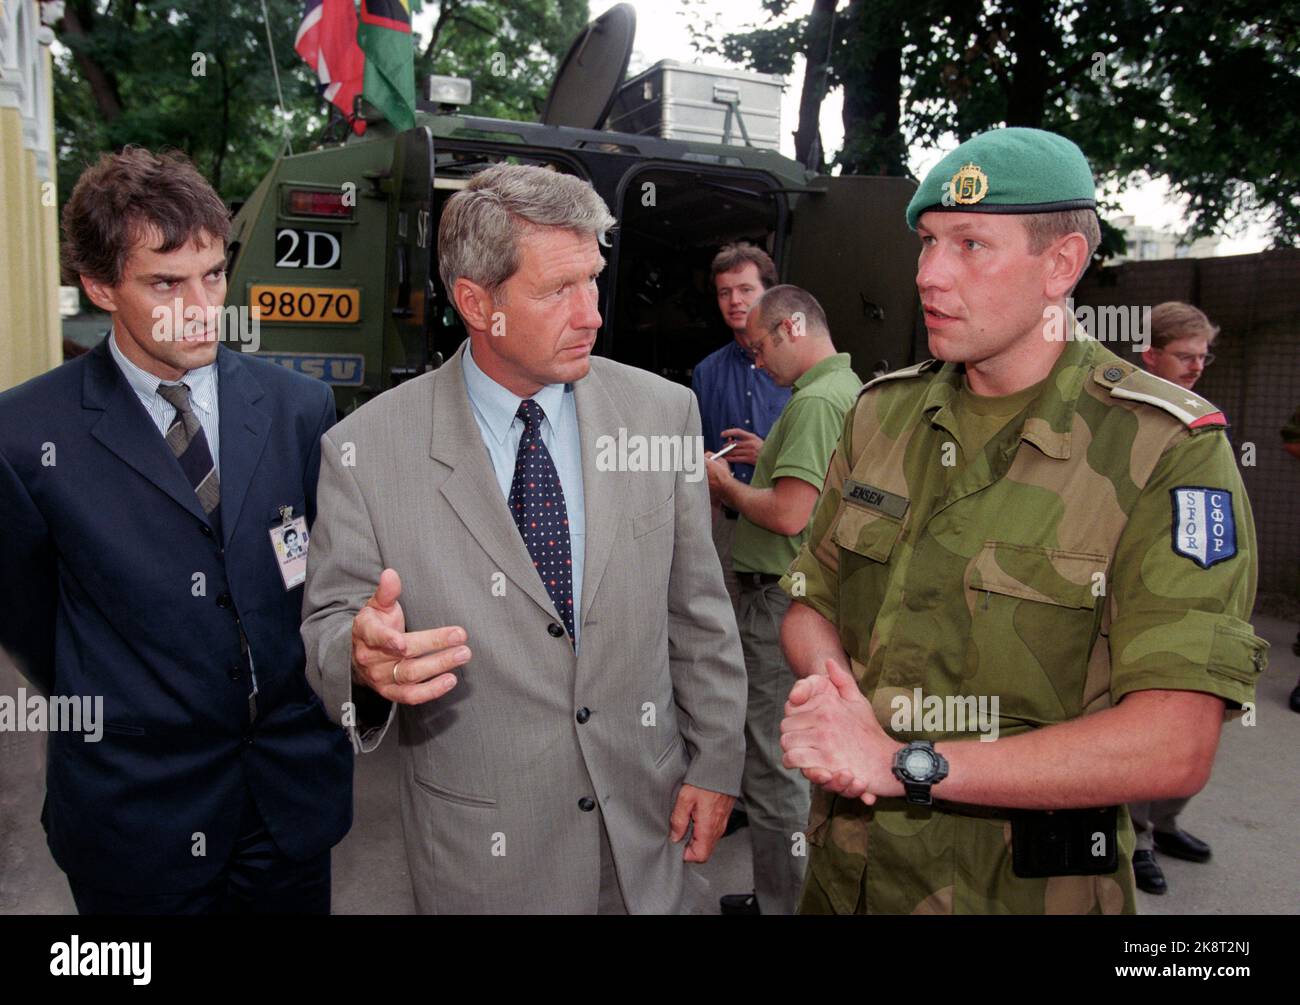 Bosnia, Sarajevo 1997 agosto: Il primo ministro Thorbjørn Jagland visita il battaglione Telemark in Bosnia. Direttore delle spedizioni Jonas Gahr Støre (t.v.). Foto: Helge Hansen NTB / NTB Foto Stock